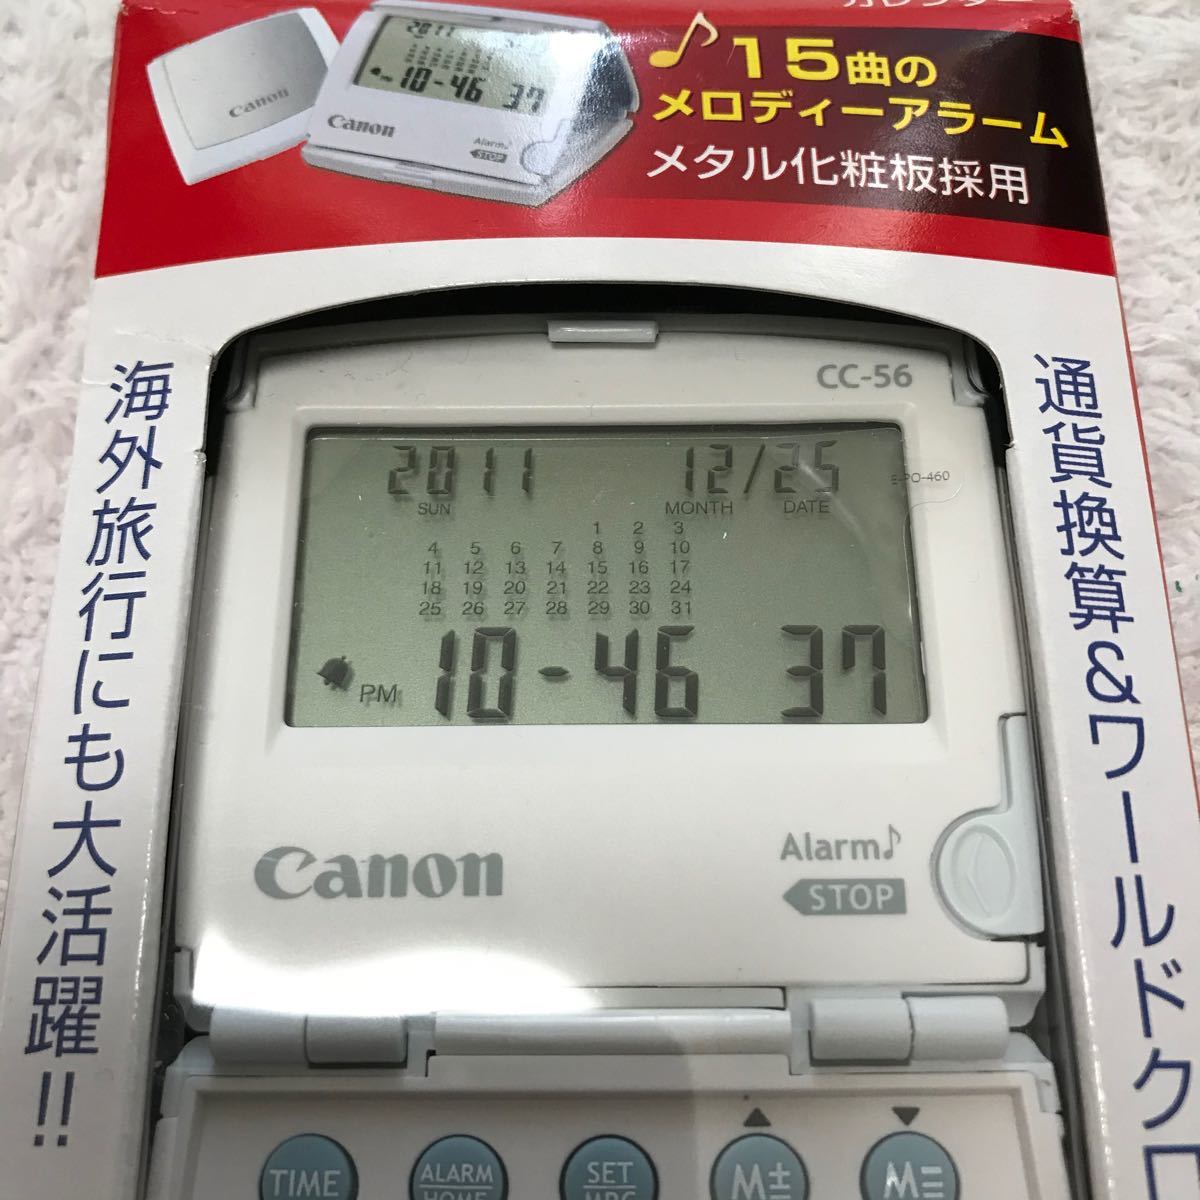 【新品】Canon 電卓 CC-56 クロック&タイマー機能 カレンダー付  折りたたみ アラーム キャノン 世界時計